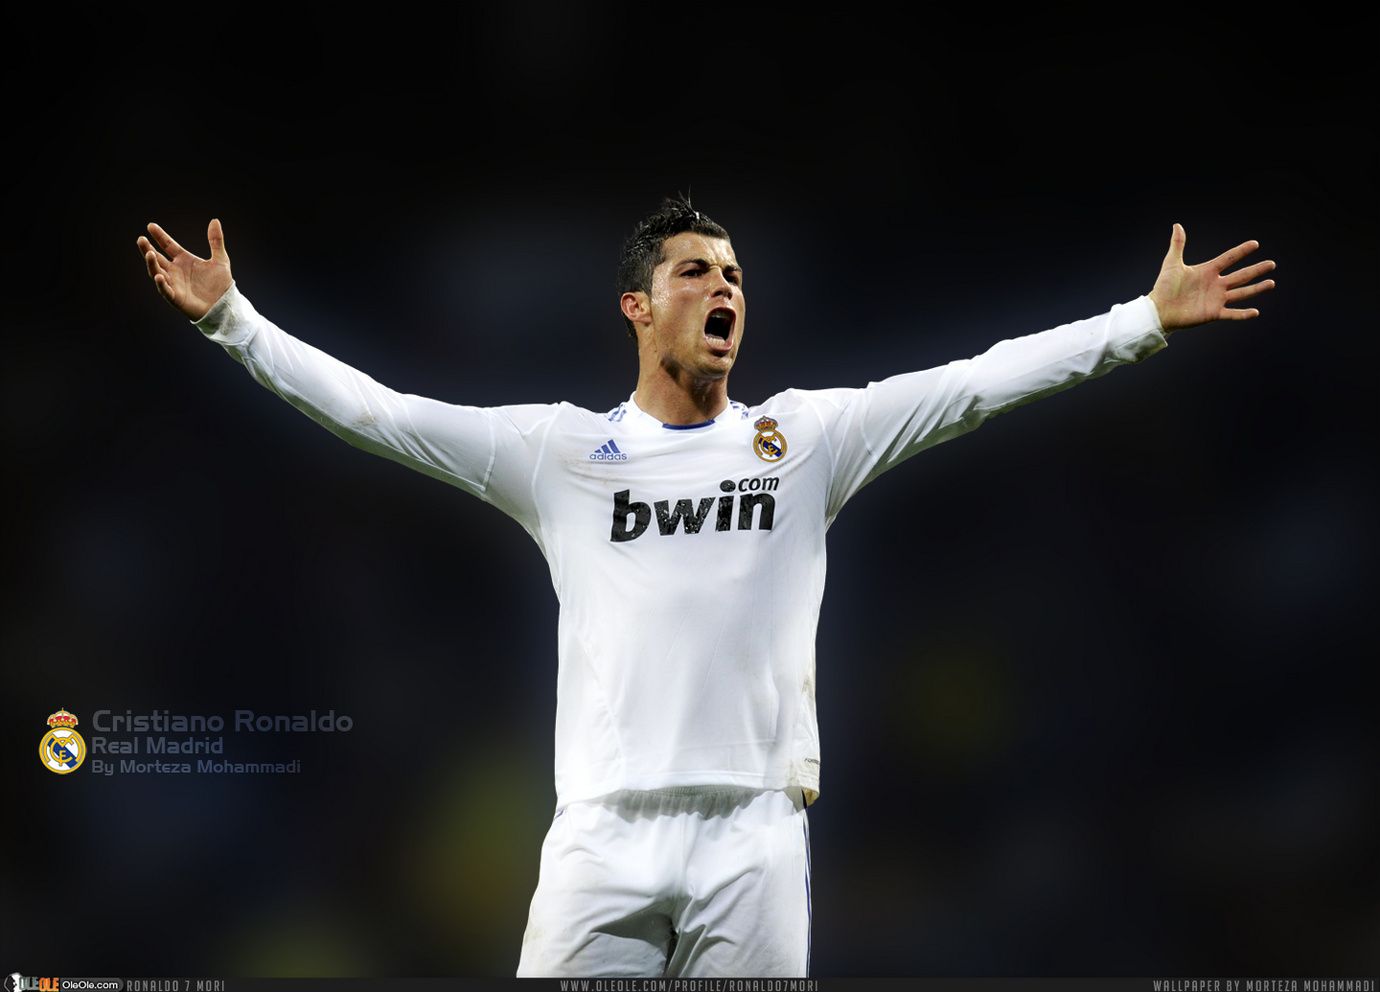 https://1.bp.blogspot.com/-VbLy-7XVcTA/TdDaqMtiK7I/AAAAAAAALoI/r6s5HdjtrqQ/s1600/Cristiano-Ronaldo-New-Wallpaper-2011.jpg